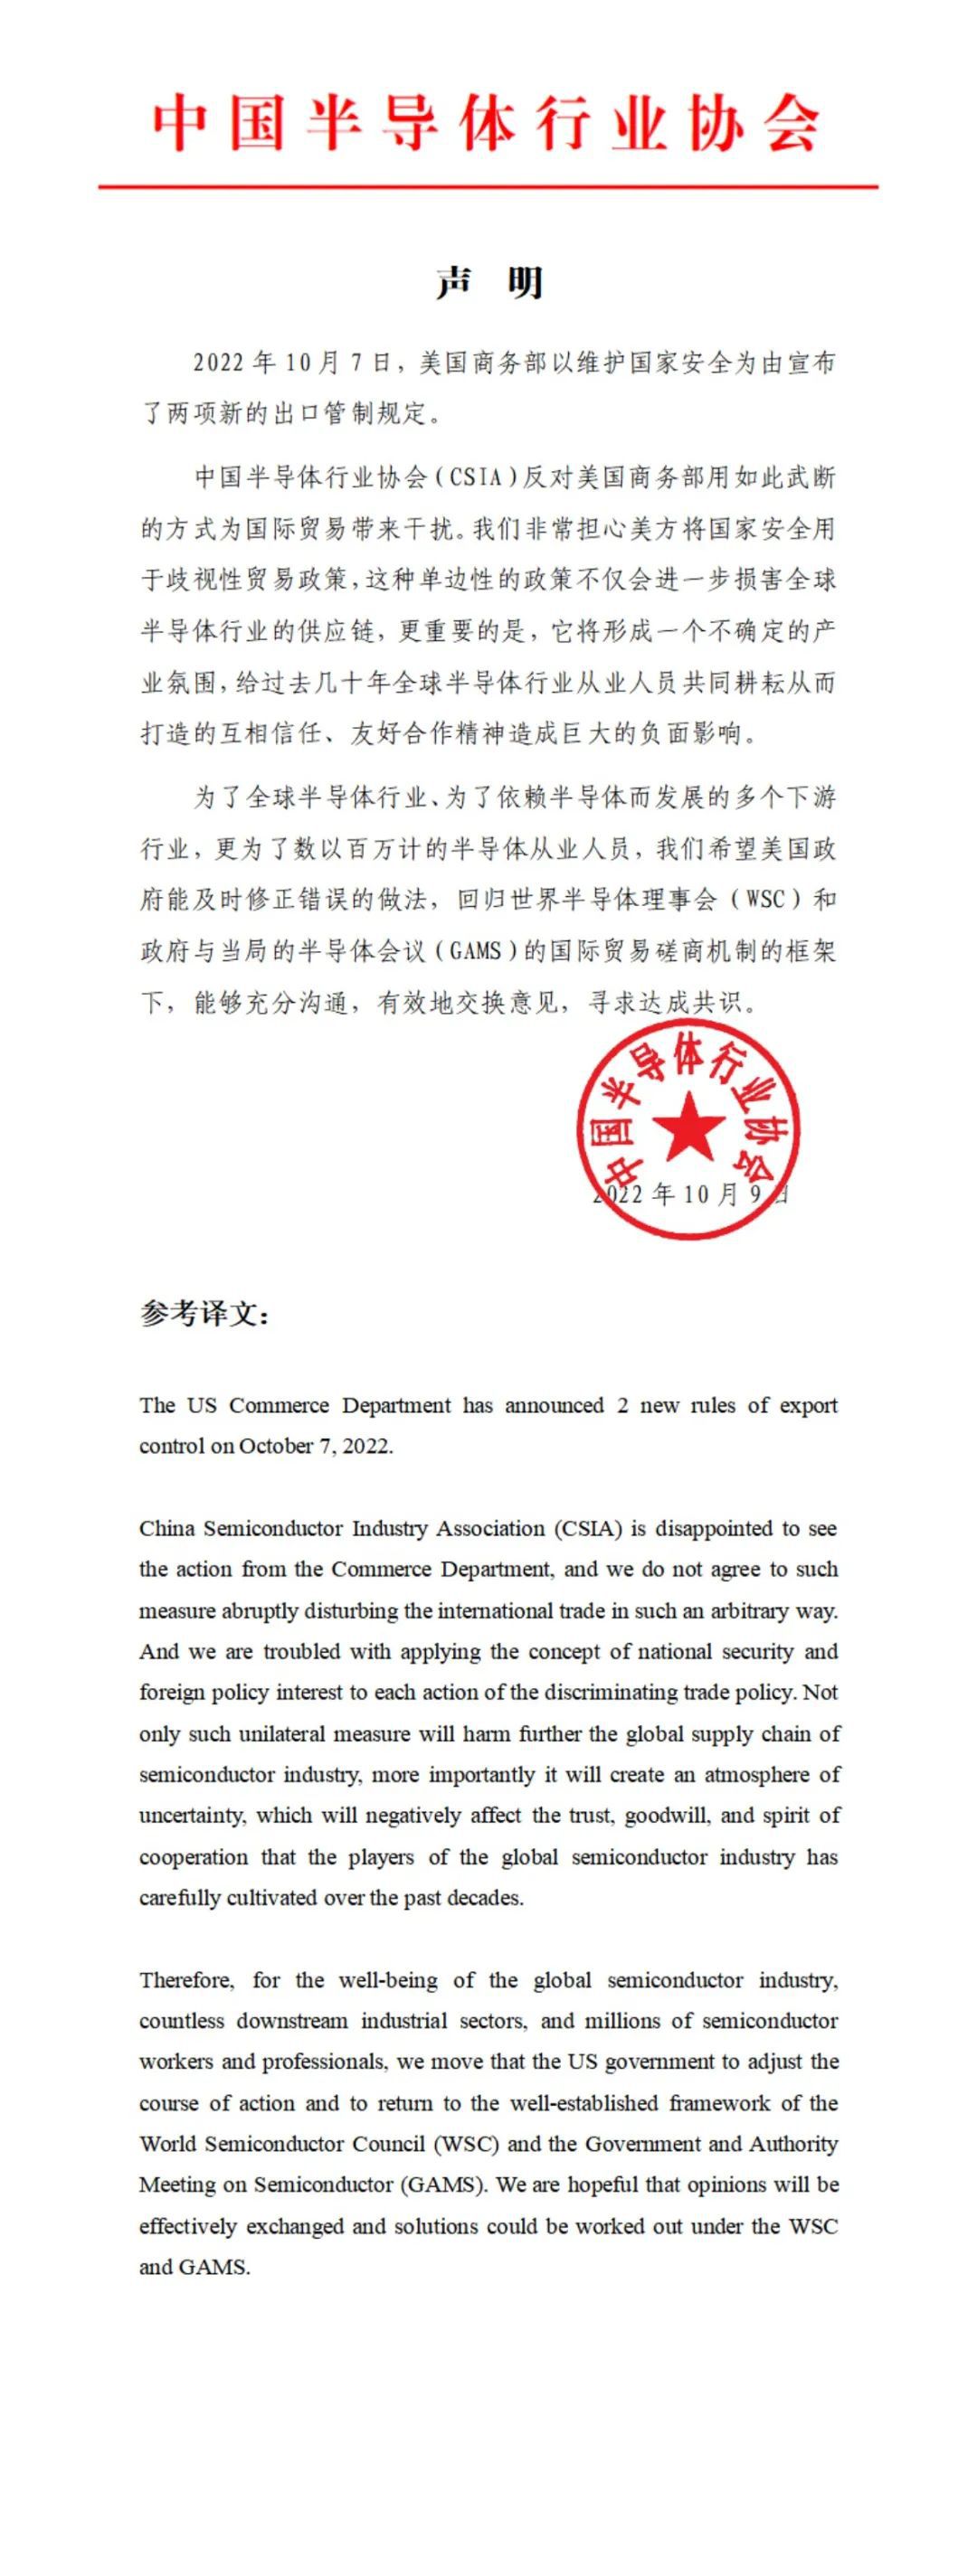 中国半导体行业协会对美国商务部两项新的出口管制规定的声明